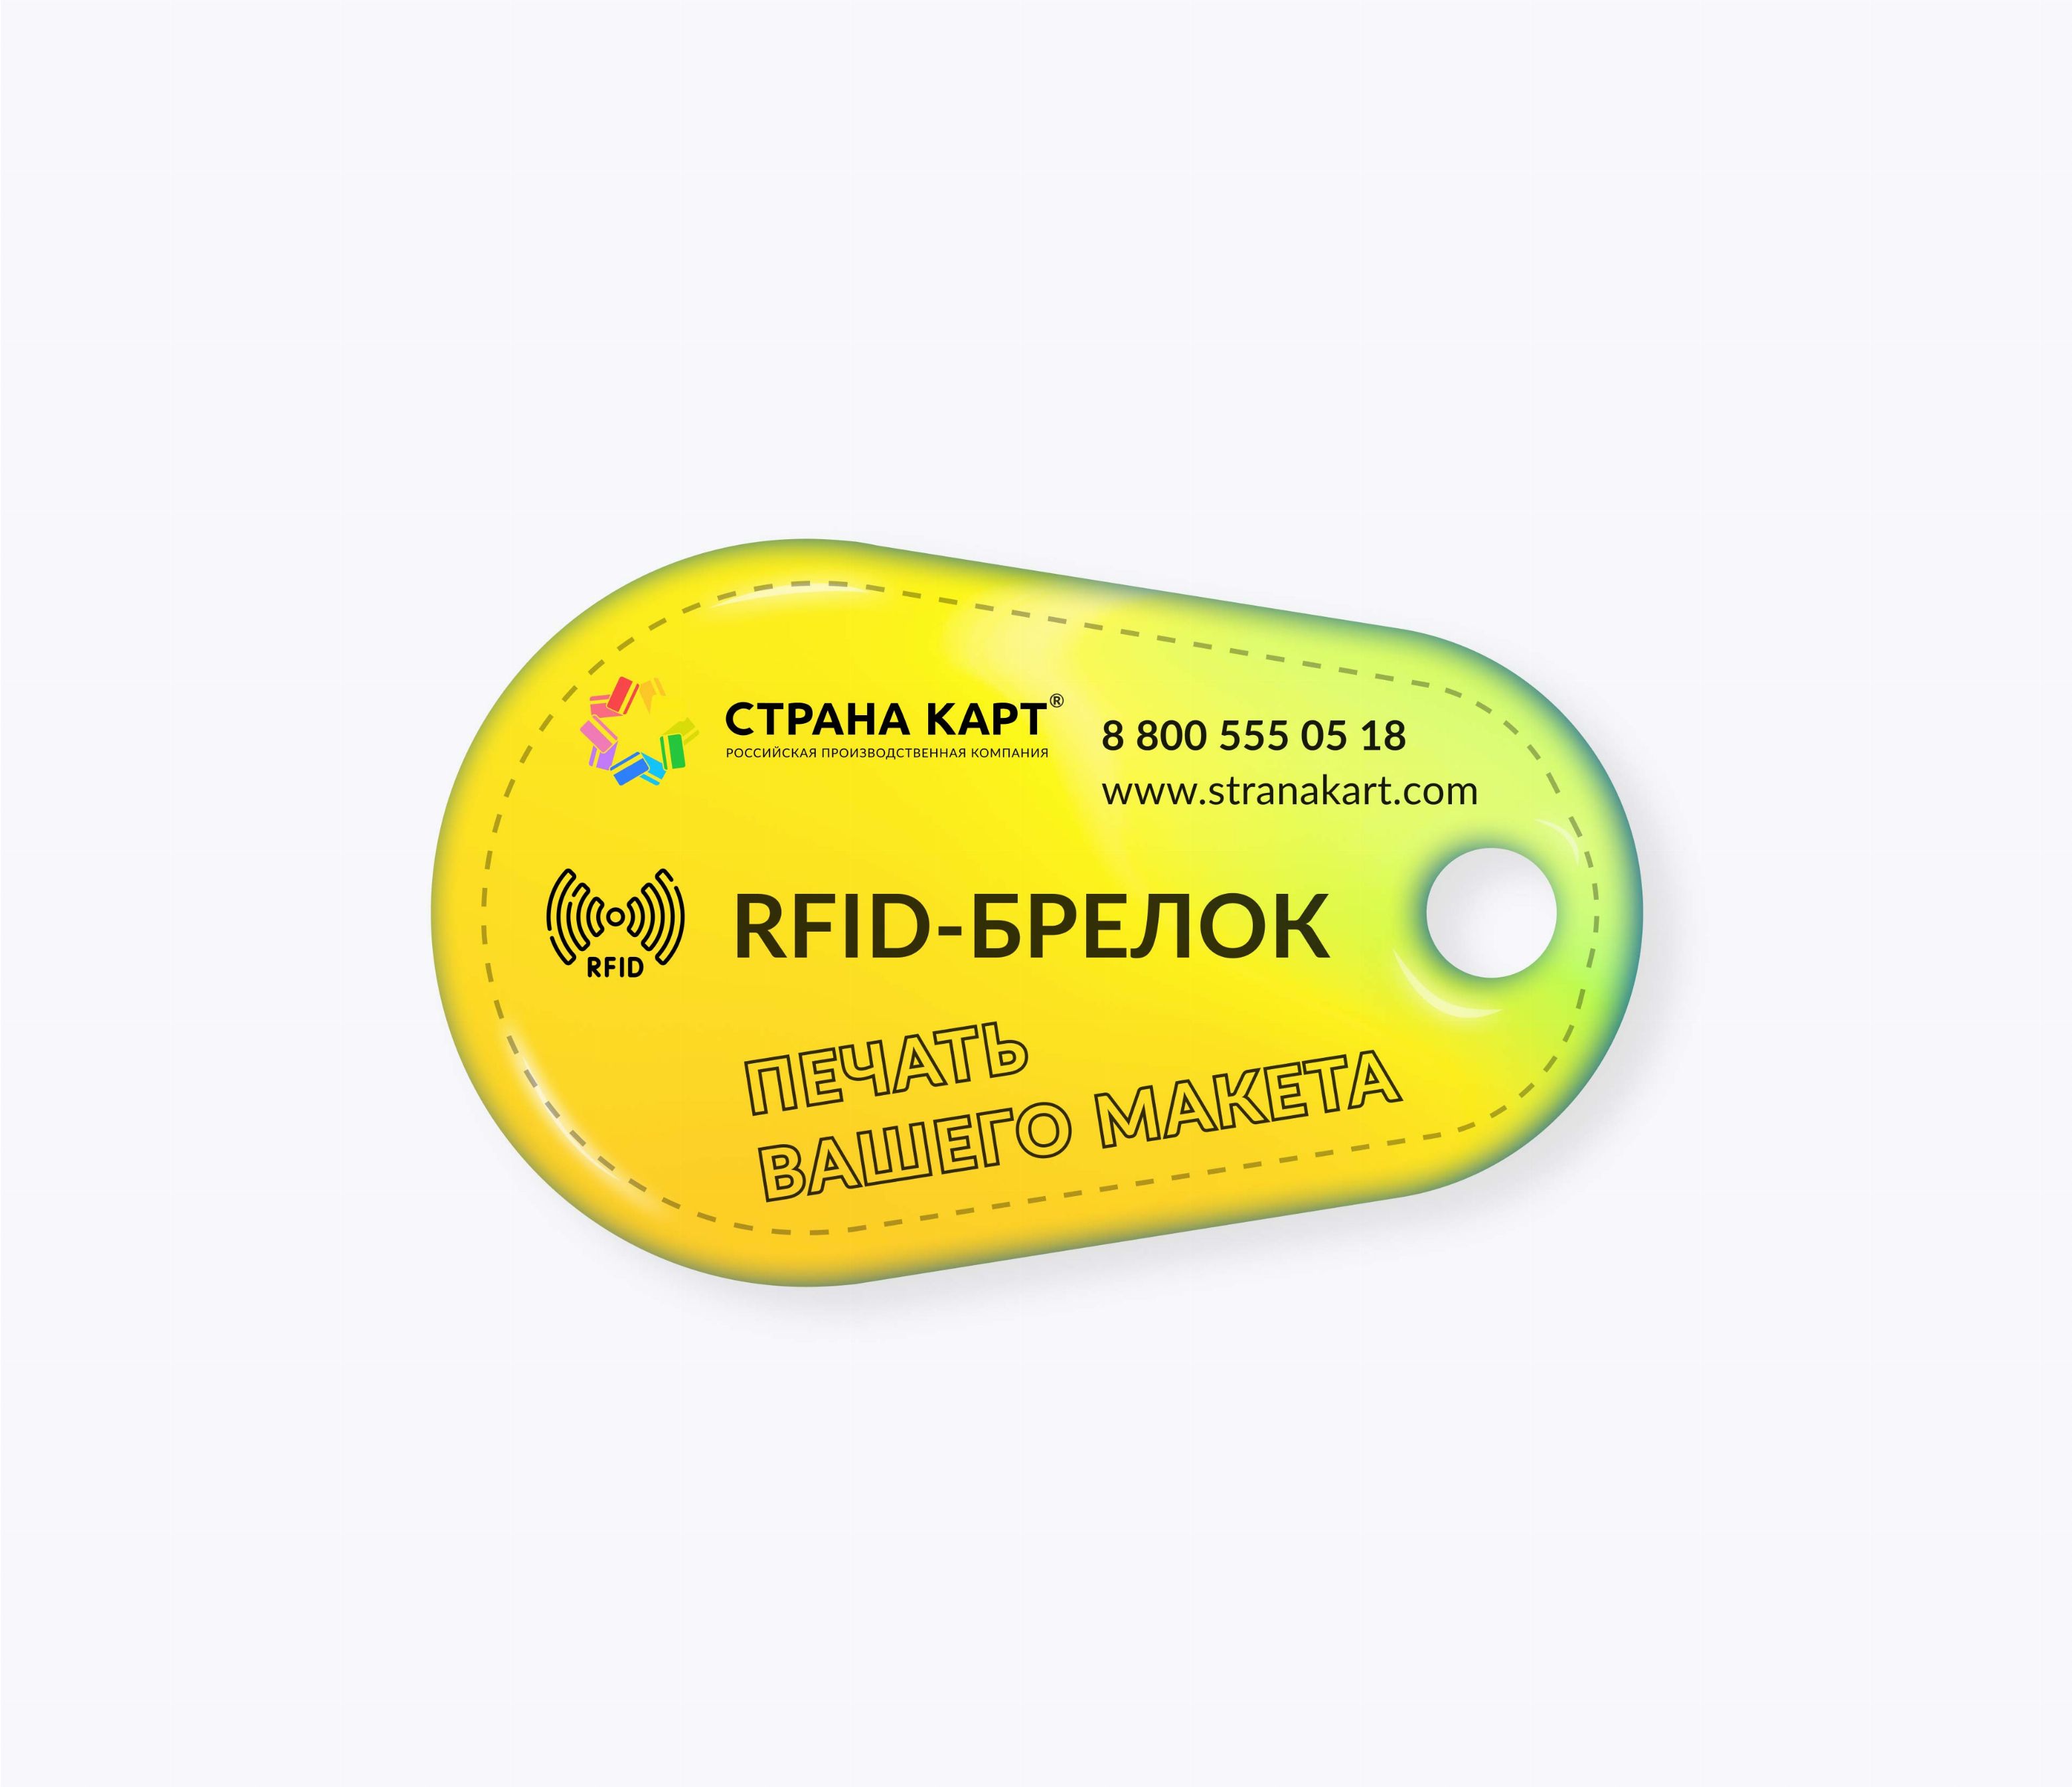 Каплевидные RFID-брелоки NEOKEY® с чипом NXP MIFARE Plus S 4k 7 byte UID RFID-брелоки NEOKEY® с чипом NXP MIFARE Plus S 4k 7 byte UID и вашим логотипом